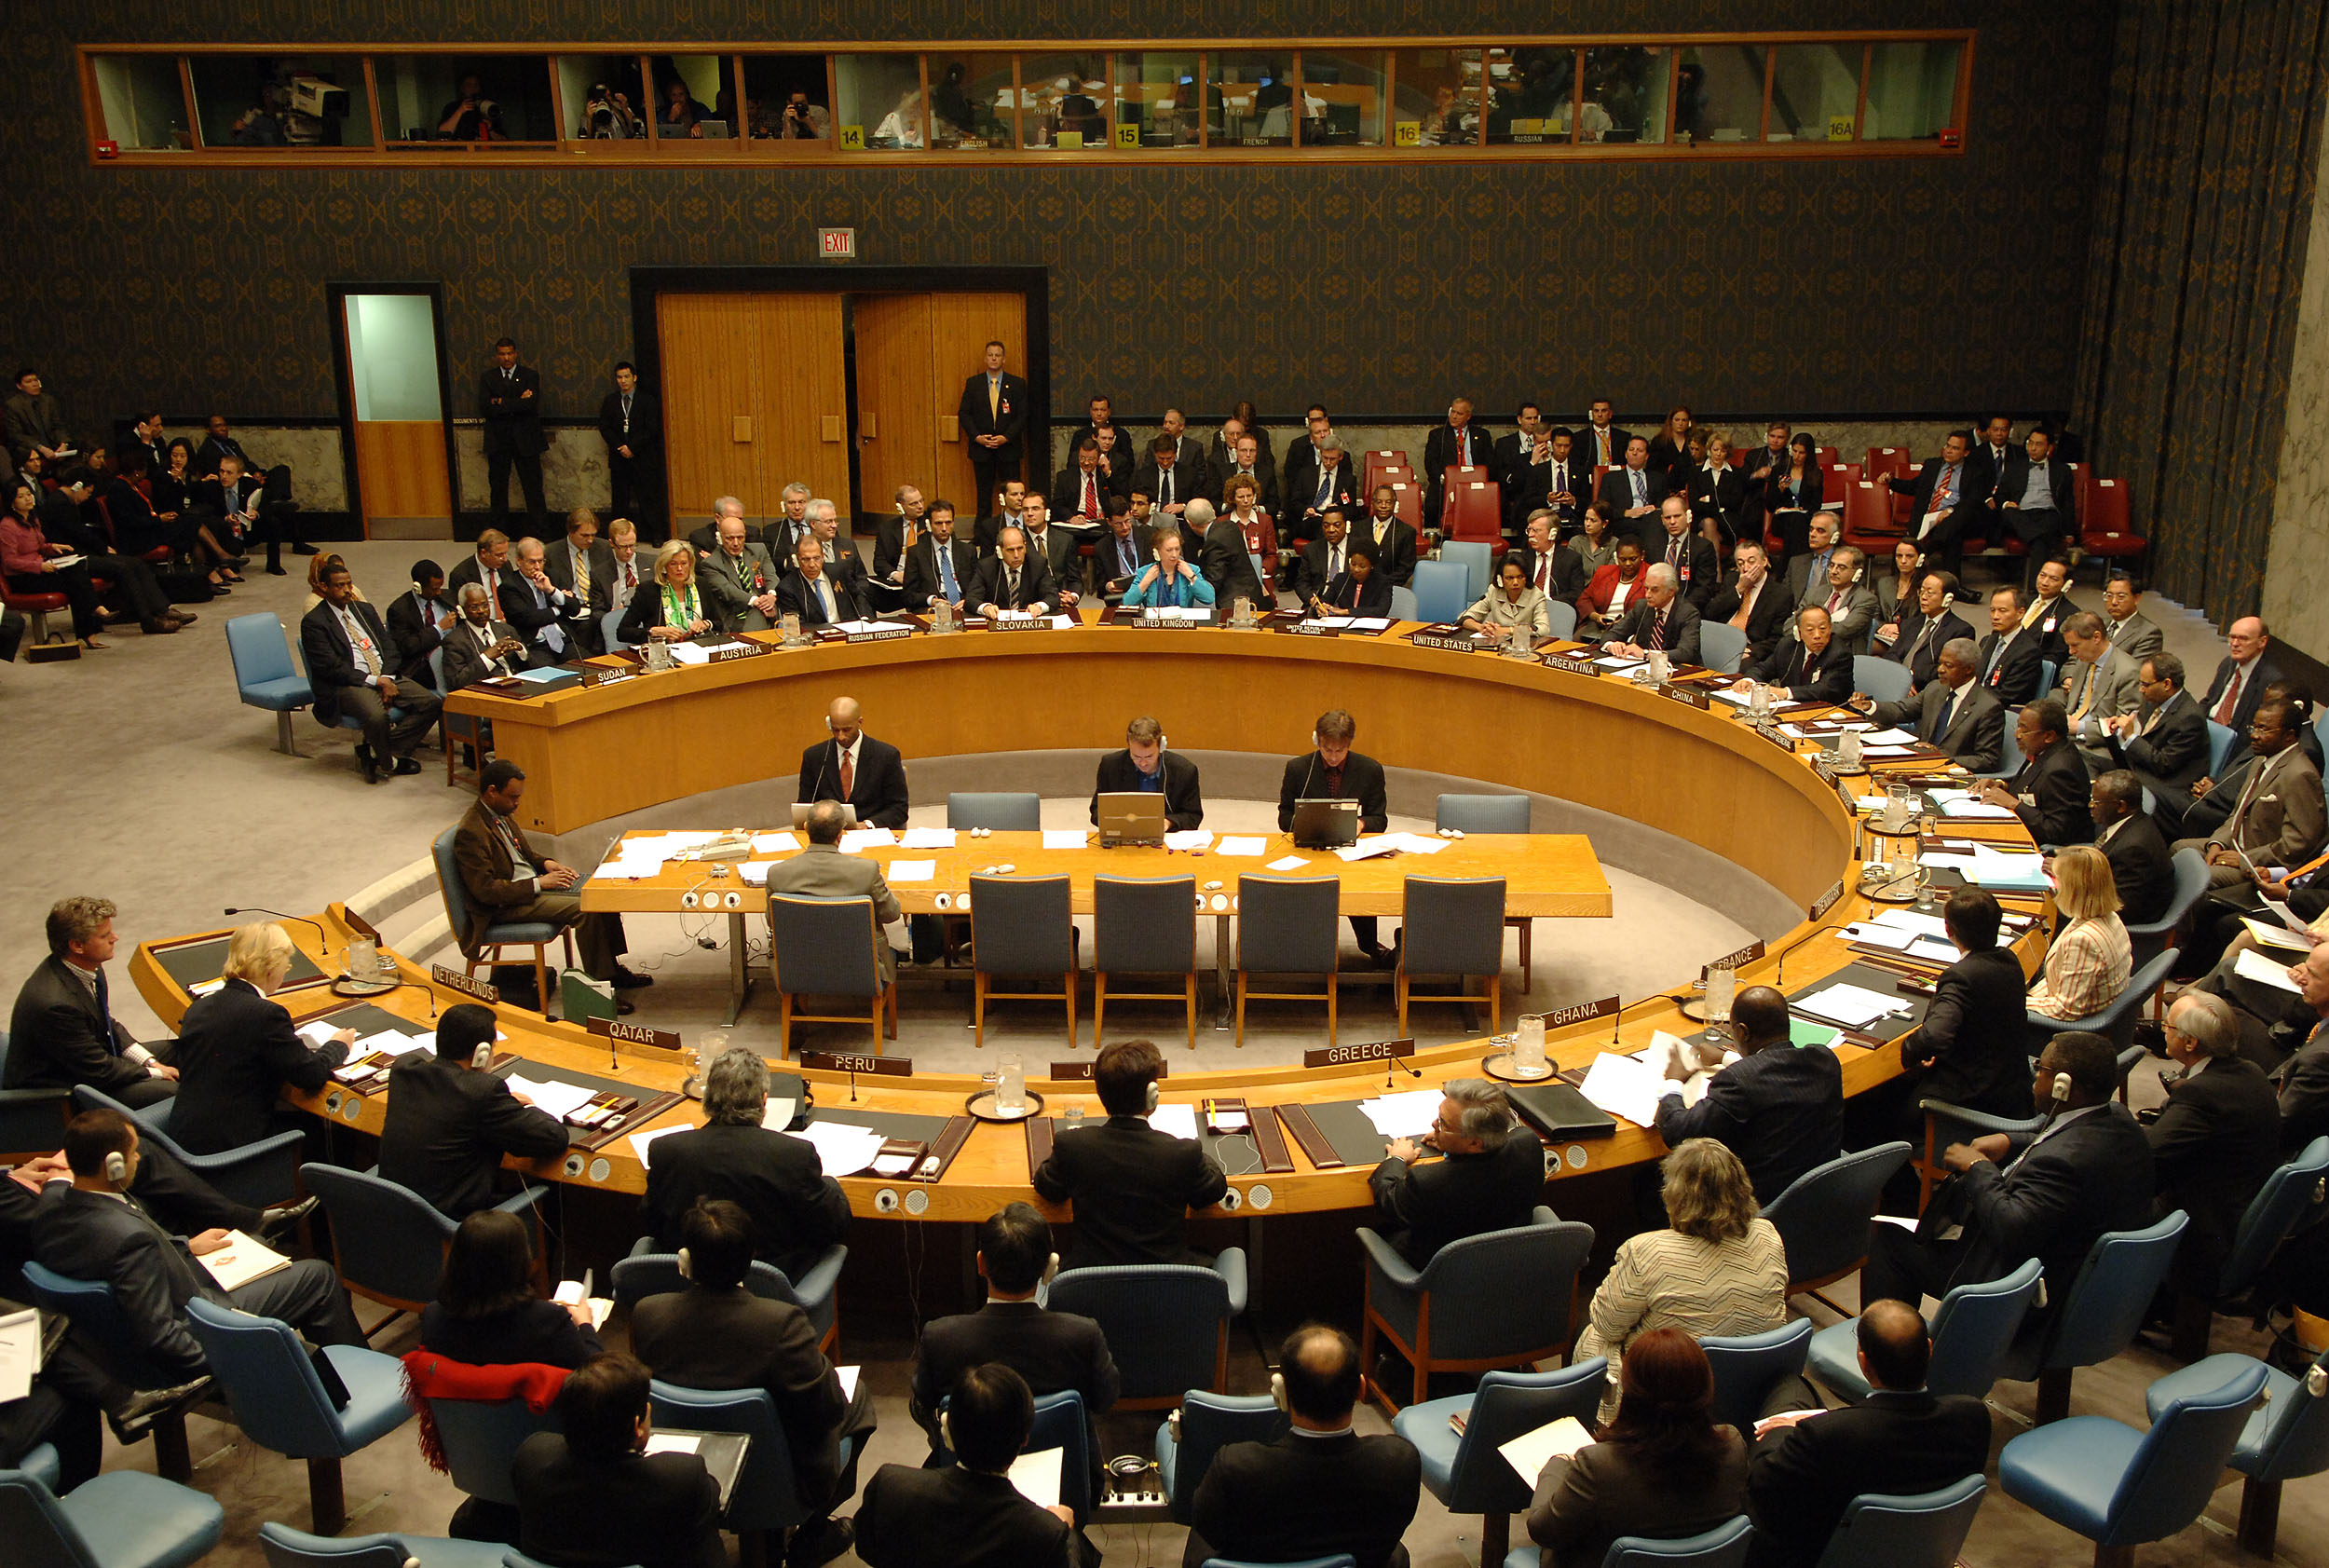   مجلس الأمن يناقش رؤية الرئيس الفلسطيني لعقد مؤتمر دولي للسلام